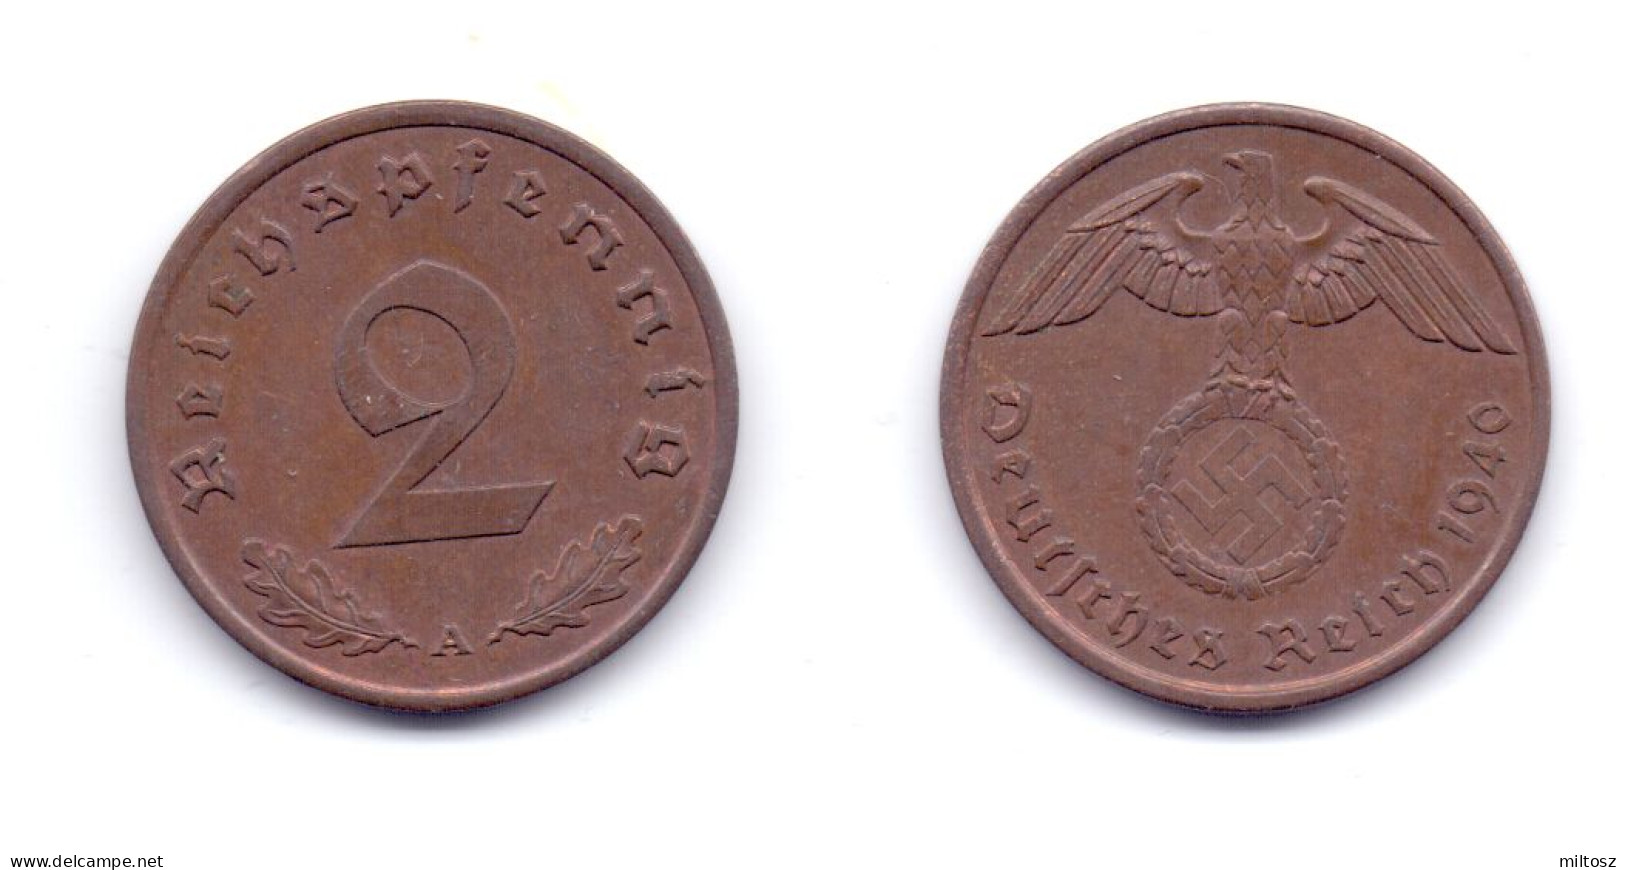 Germany 2 Reichspfennig 1940 A - 2 Reichspfennig